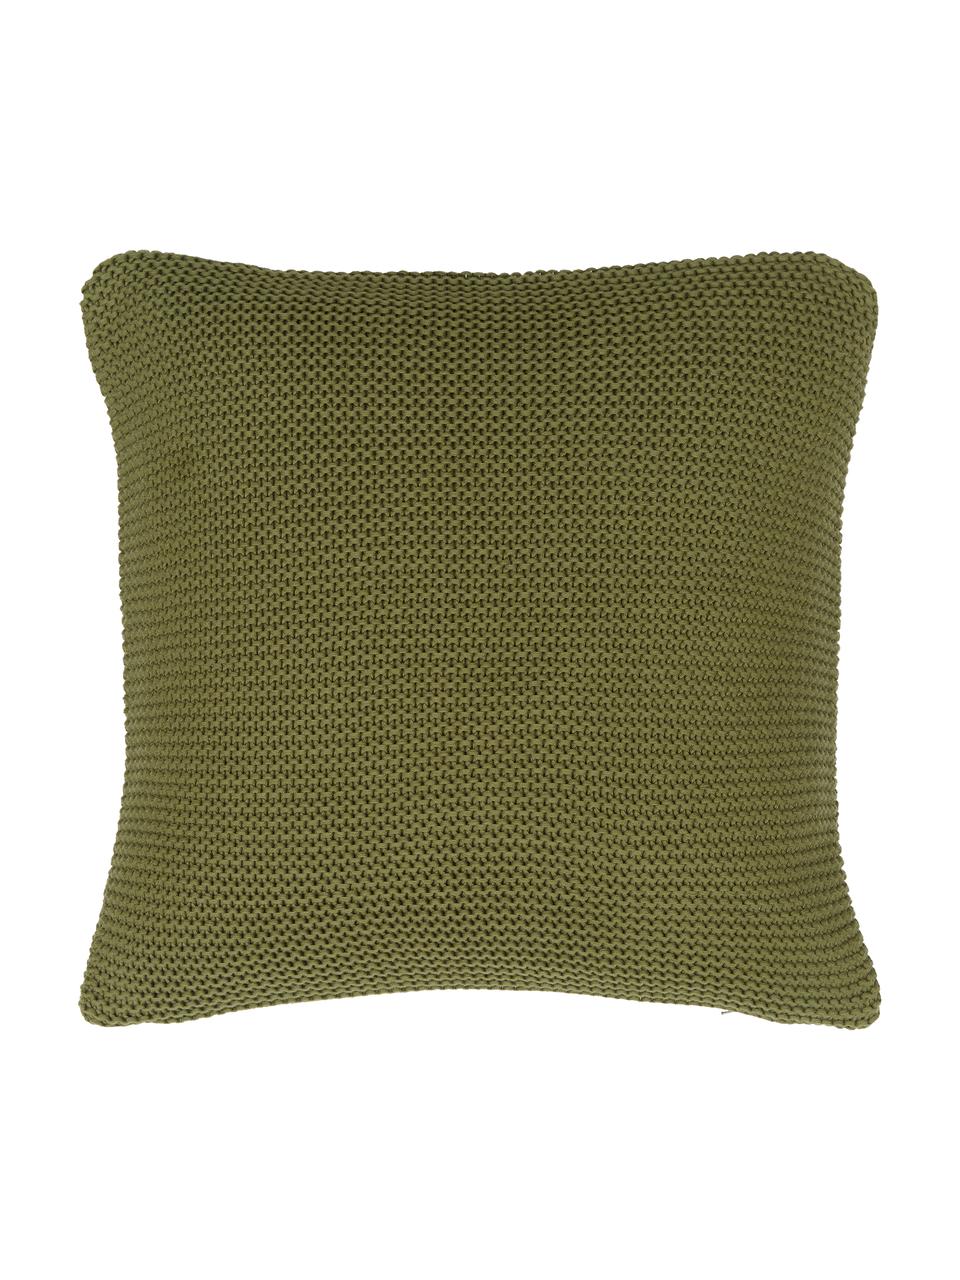 Housse de coussin en tricot Adalyn, 100 % coton bio, certifié GOTS, Vert, larg. 50 x long. 50 cm